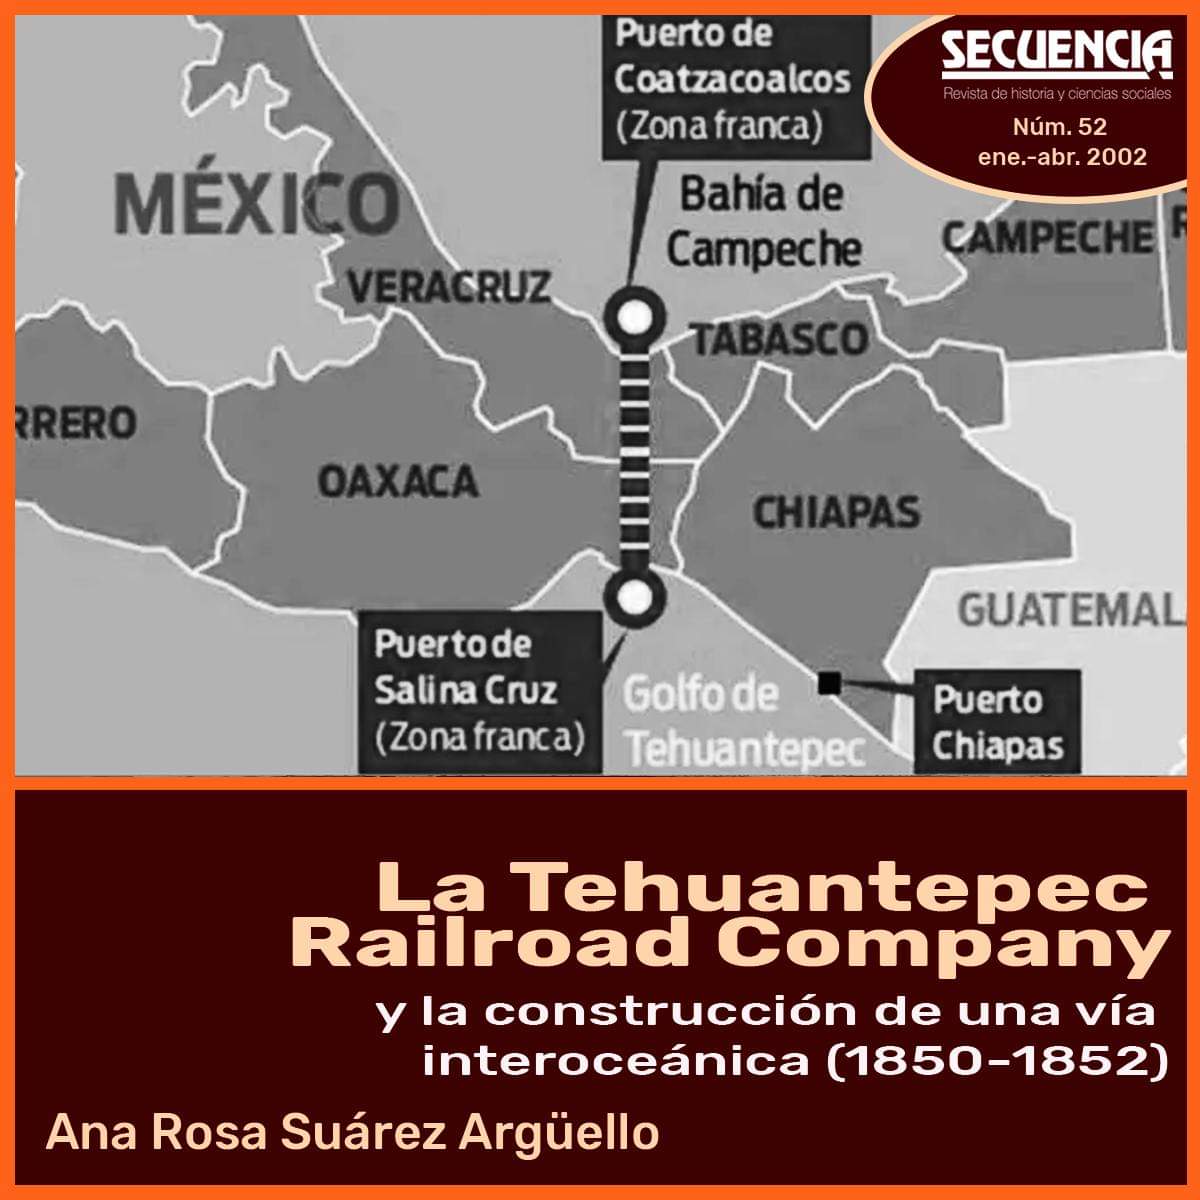 secuencia.mora.edu.mx/index.php/Secu…
Los planes de construir una ruta que uniera los litorales oriental y occidental por el Istmo mexicano donde la #Tehuantepec Railroad Company jugó un papel definitivo. #itsmodetehuantepec